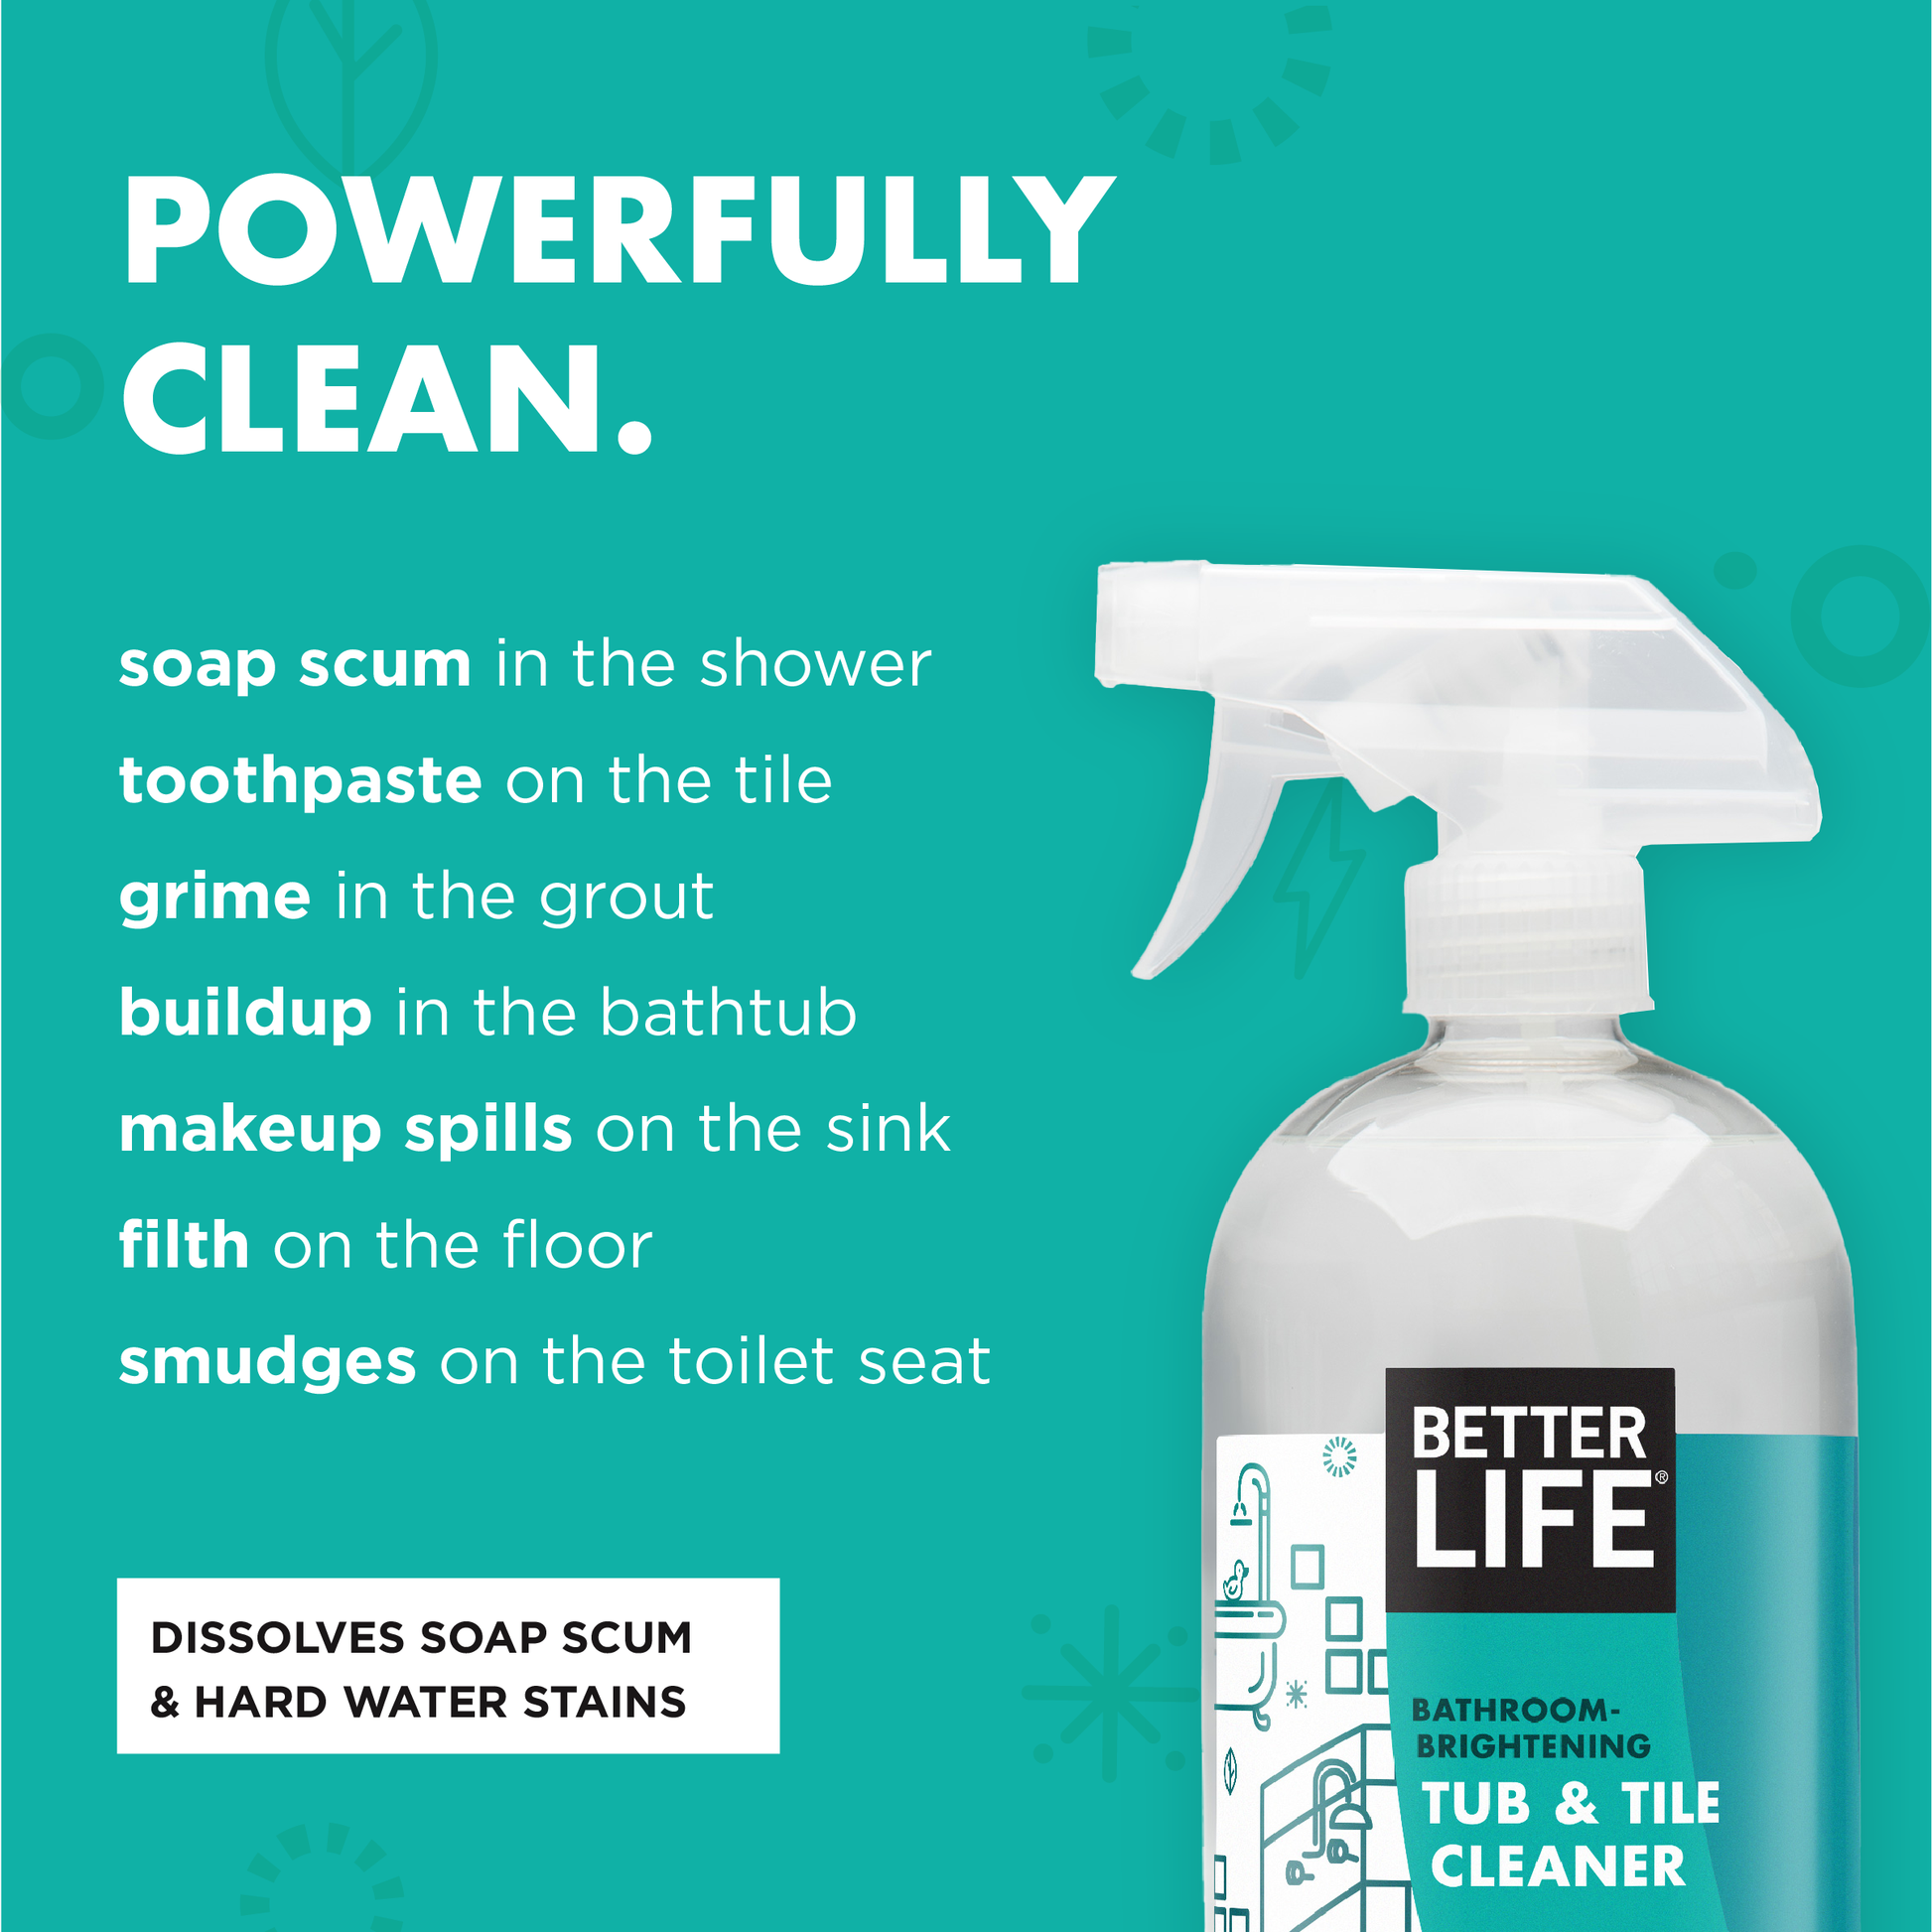 Better Life Cleaner - Tub & Tile - 32 oz